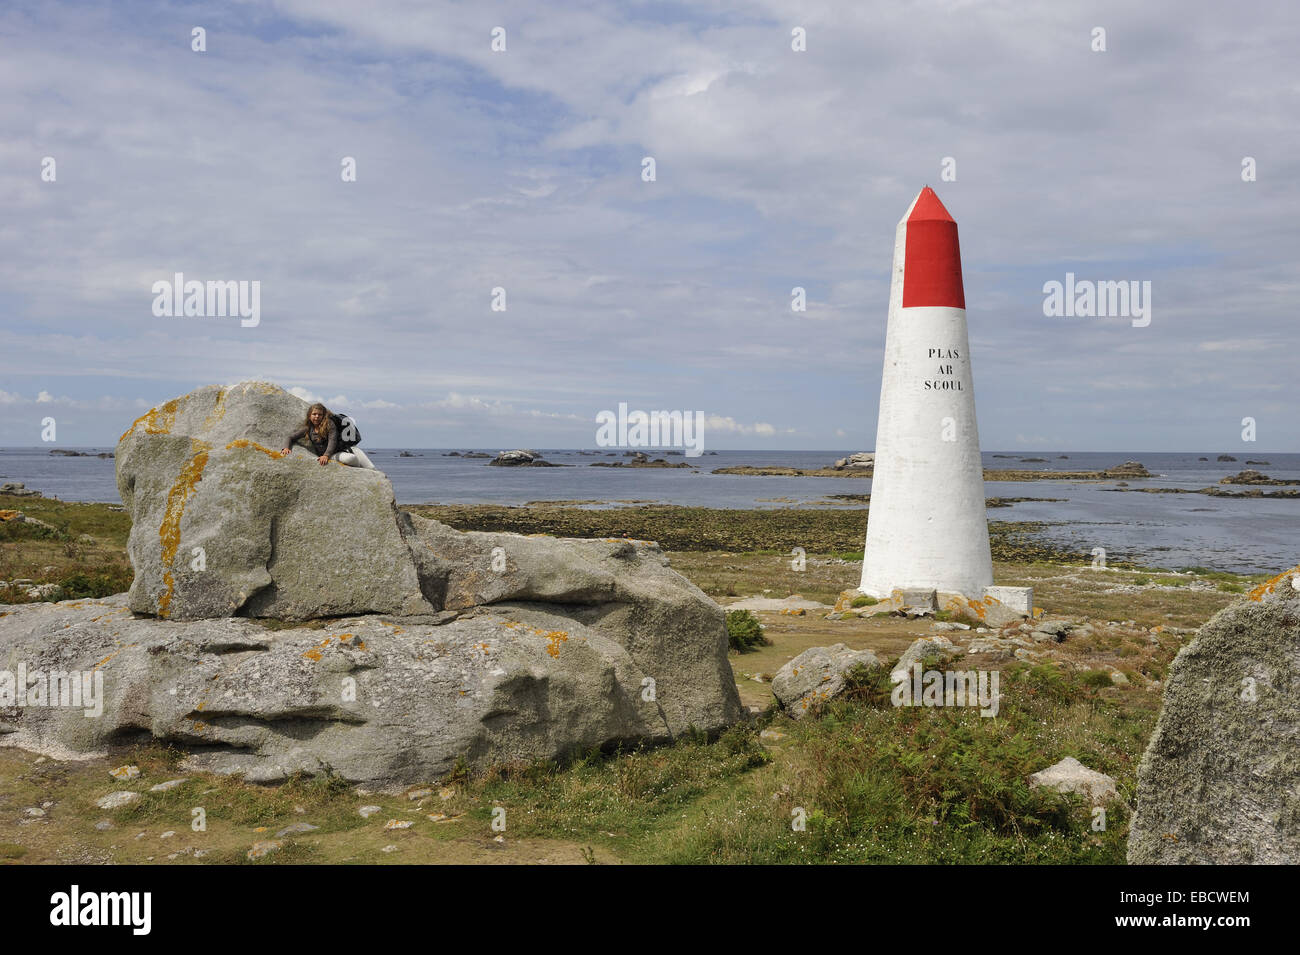 Seamark sur l'Ile de Sein, au large de la côte de la Pointe du Raz, département du Finistère, région Bretagne, ouest de la France, l'Europe de l'ouest. Banque D'Images